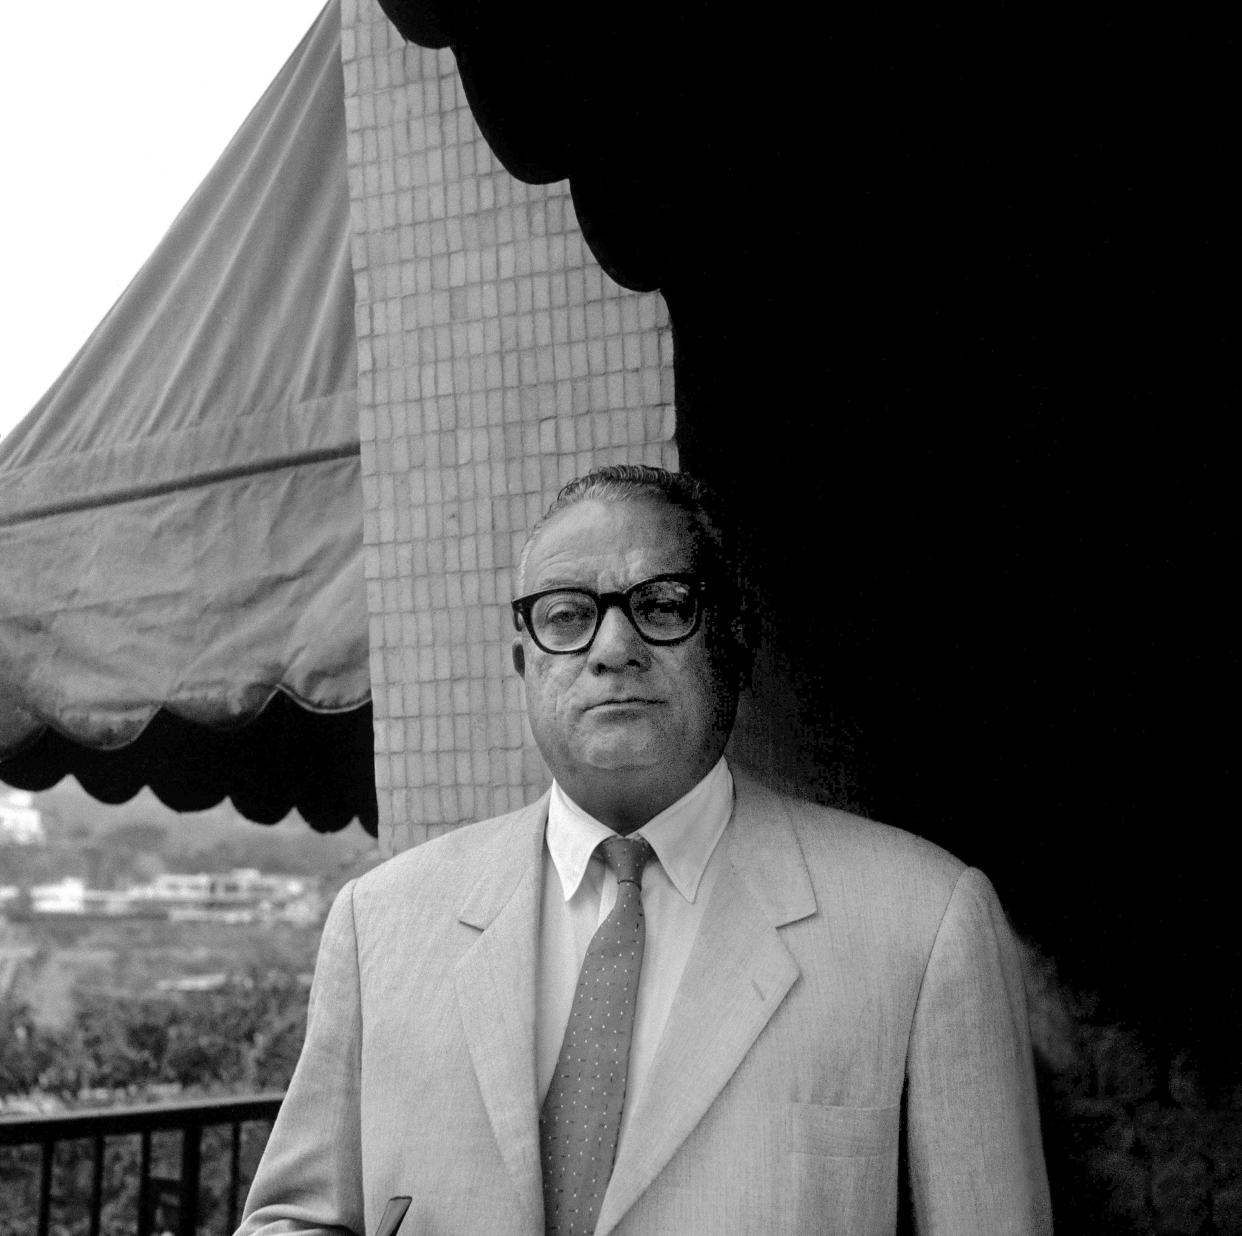 Rómulo Betancourt, un expresidente de Venezuela, en 1958. En la década de 1960, inició una disputa que reclamaba más de la mitad del territorio de Guyana. (Tad Szulc/The New York Times)